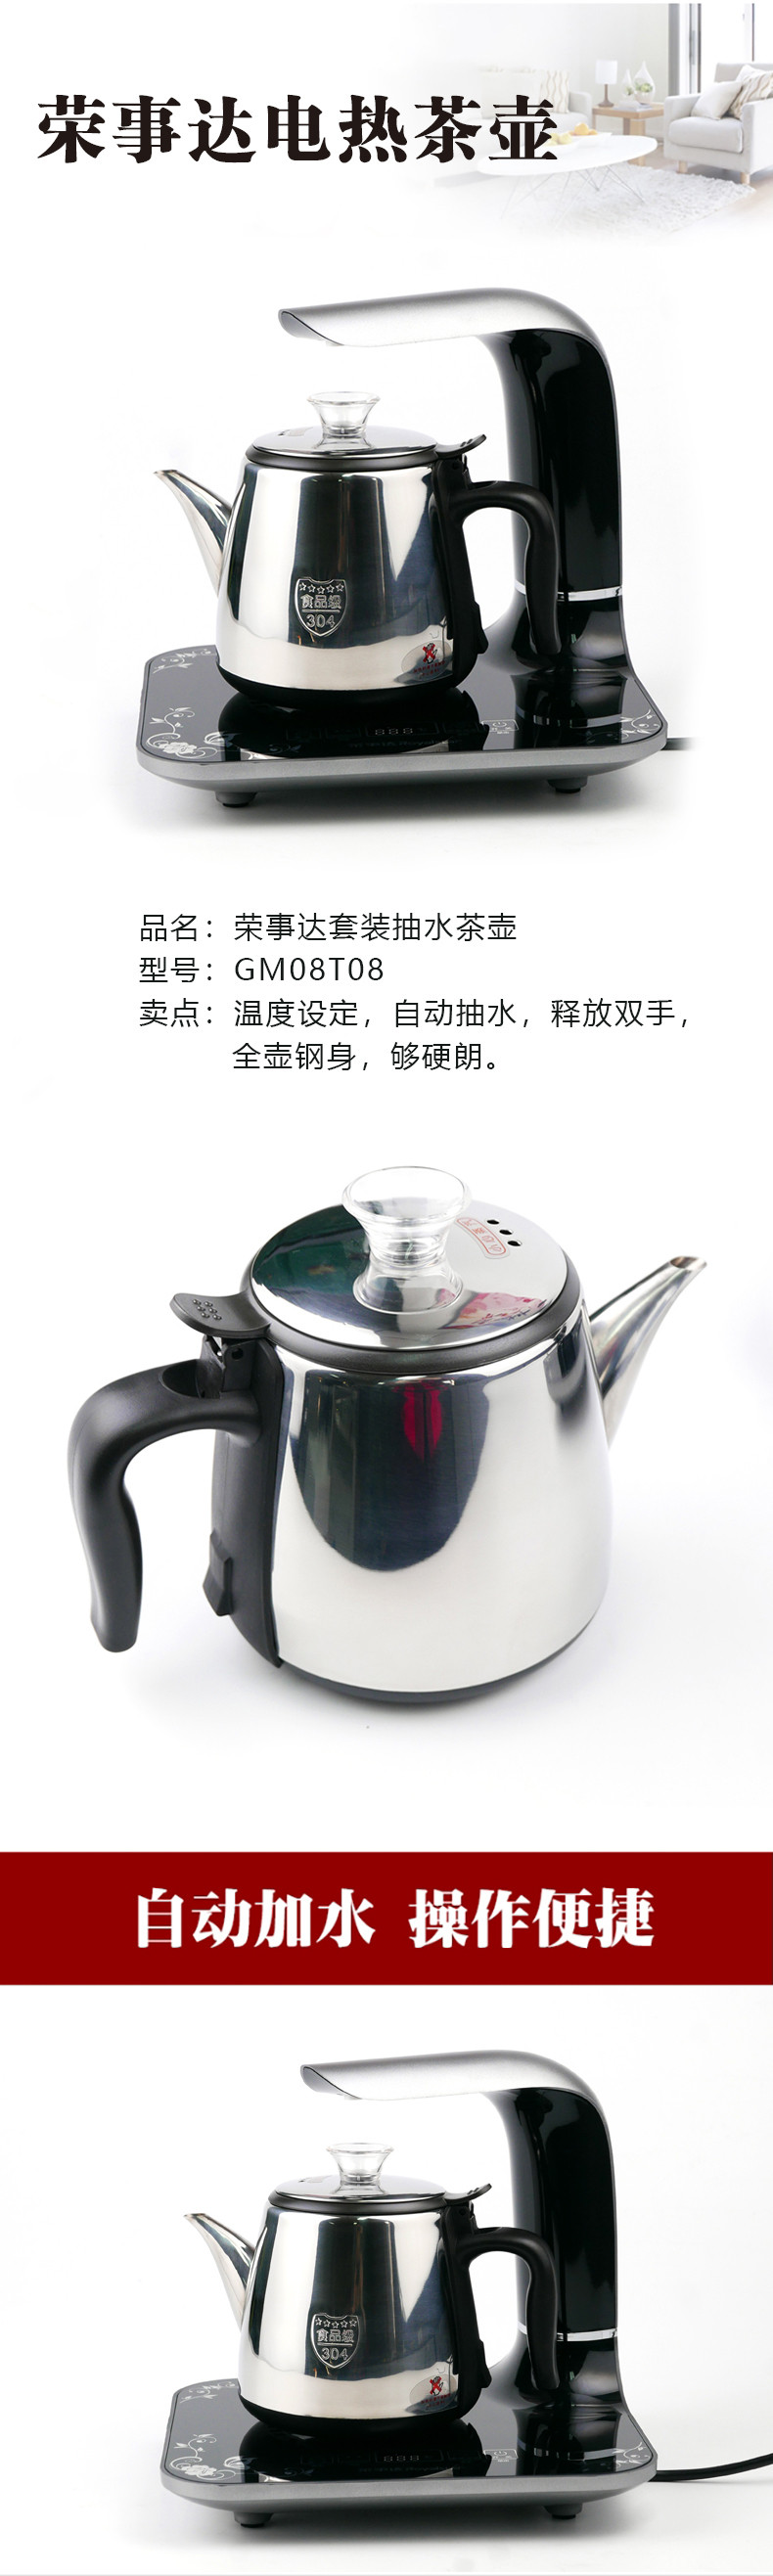 荣事达/Royalstar 套装抽水茶壶GM08T08 电水壶烧水壶自动上水电热水壶茶壶